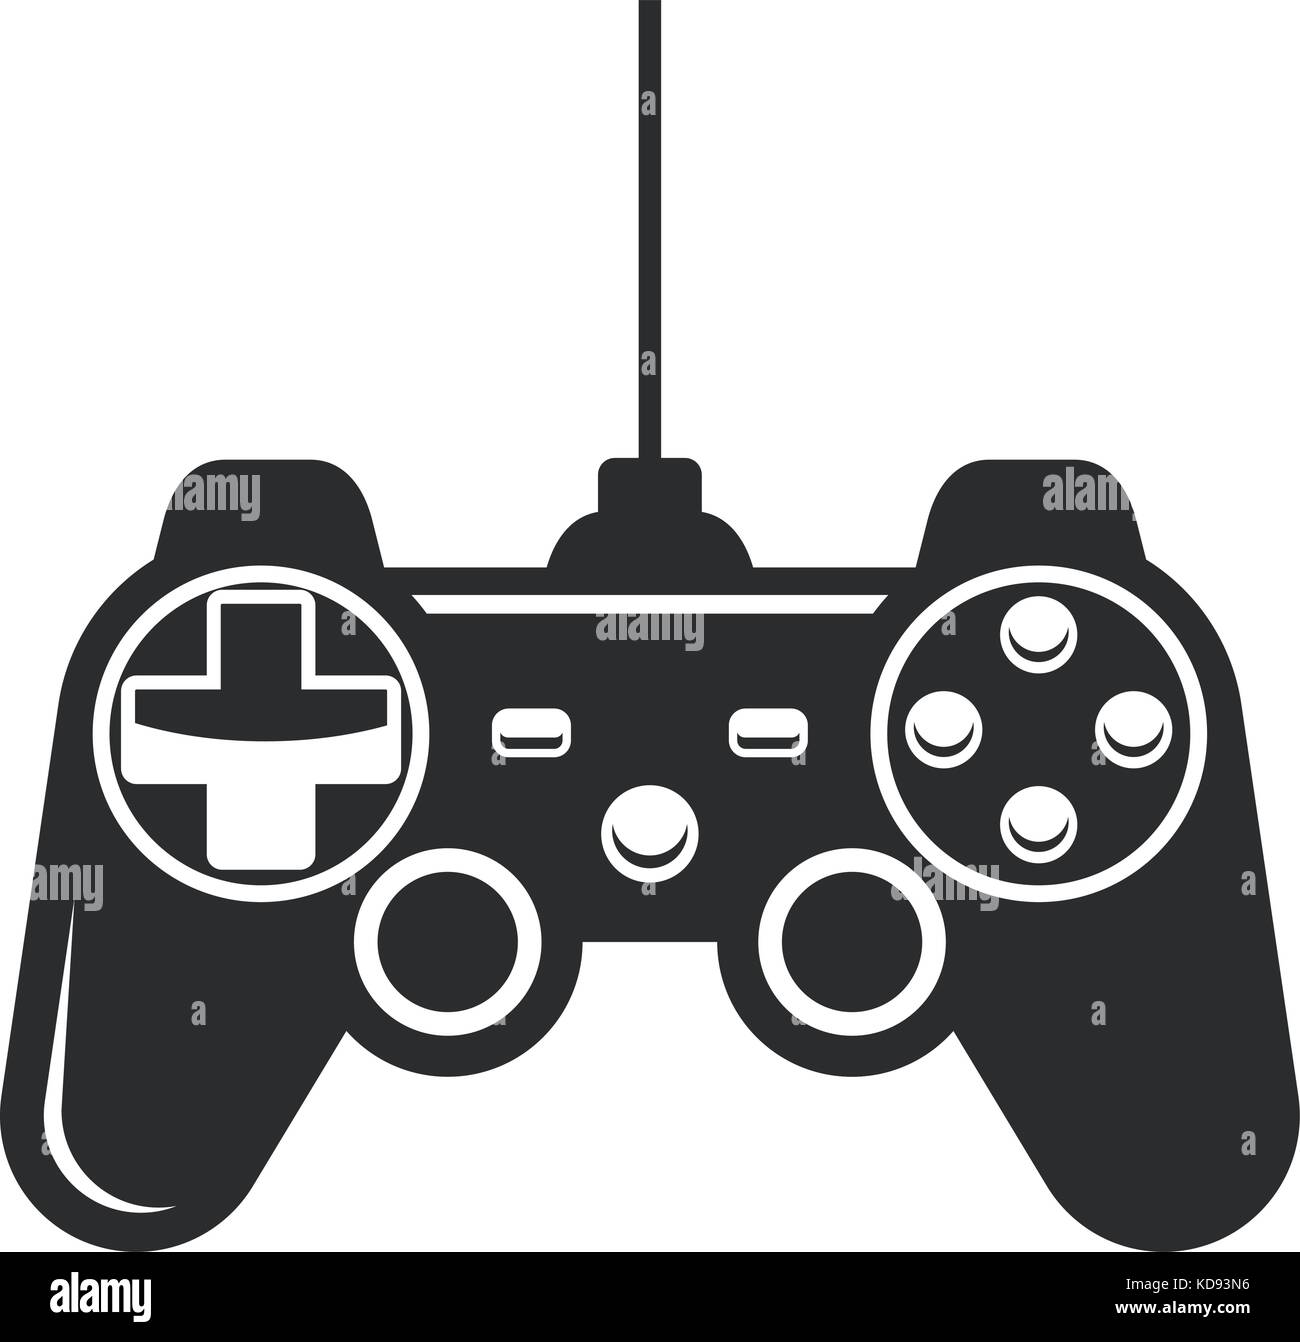 Icona del gamepad - joystick per console di gioco Illustrazione Vettoriale